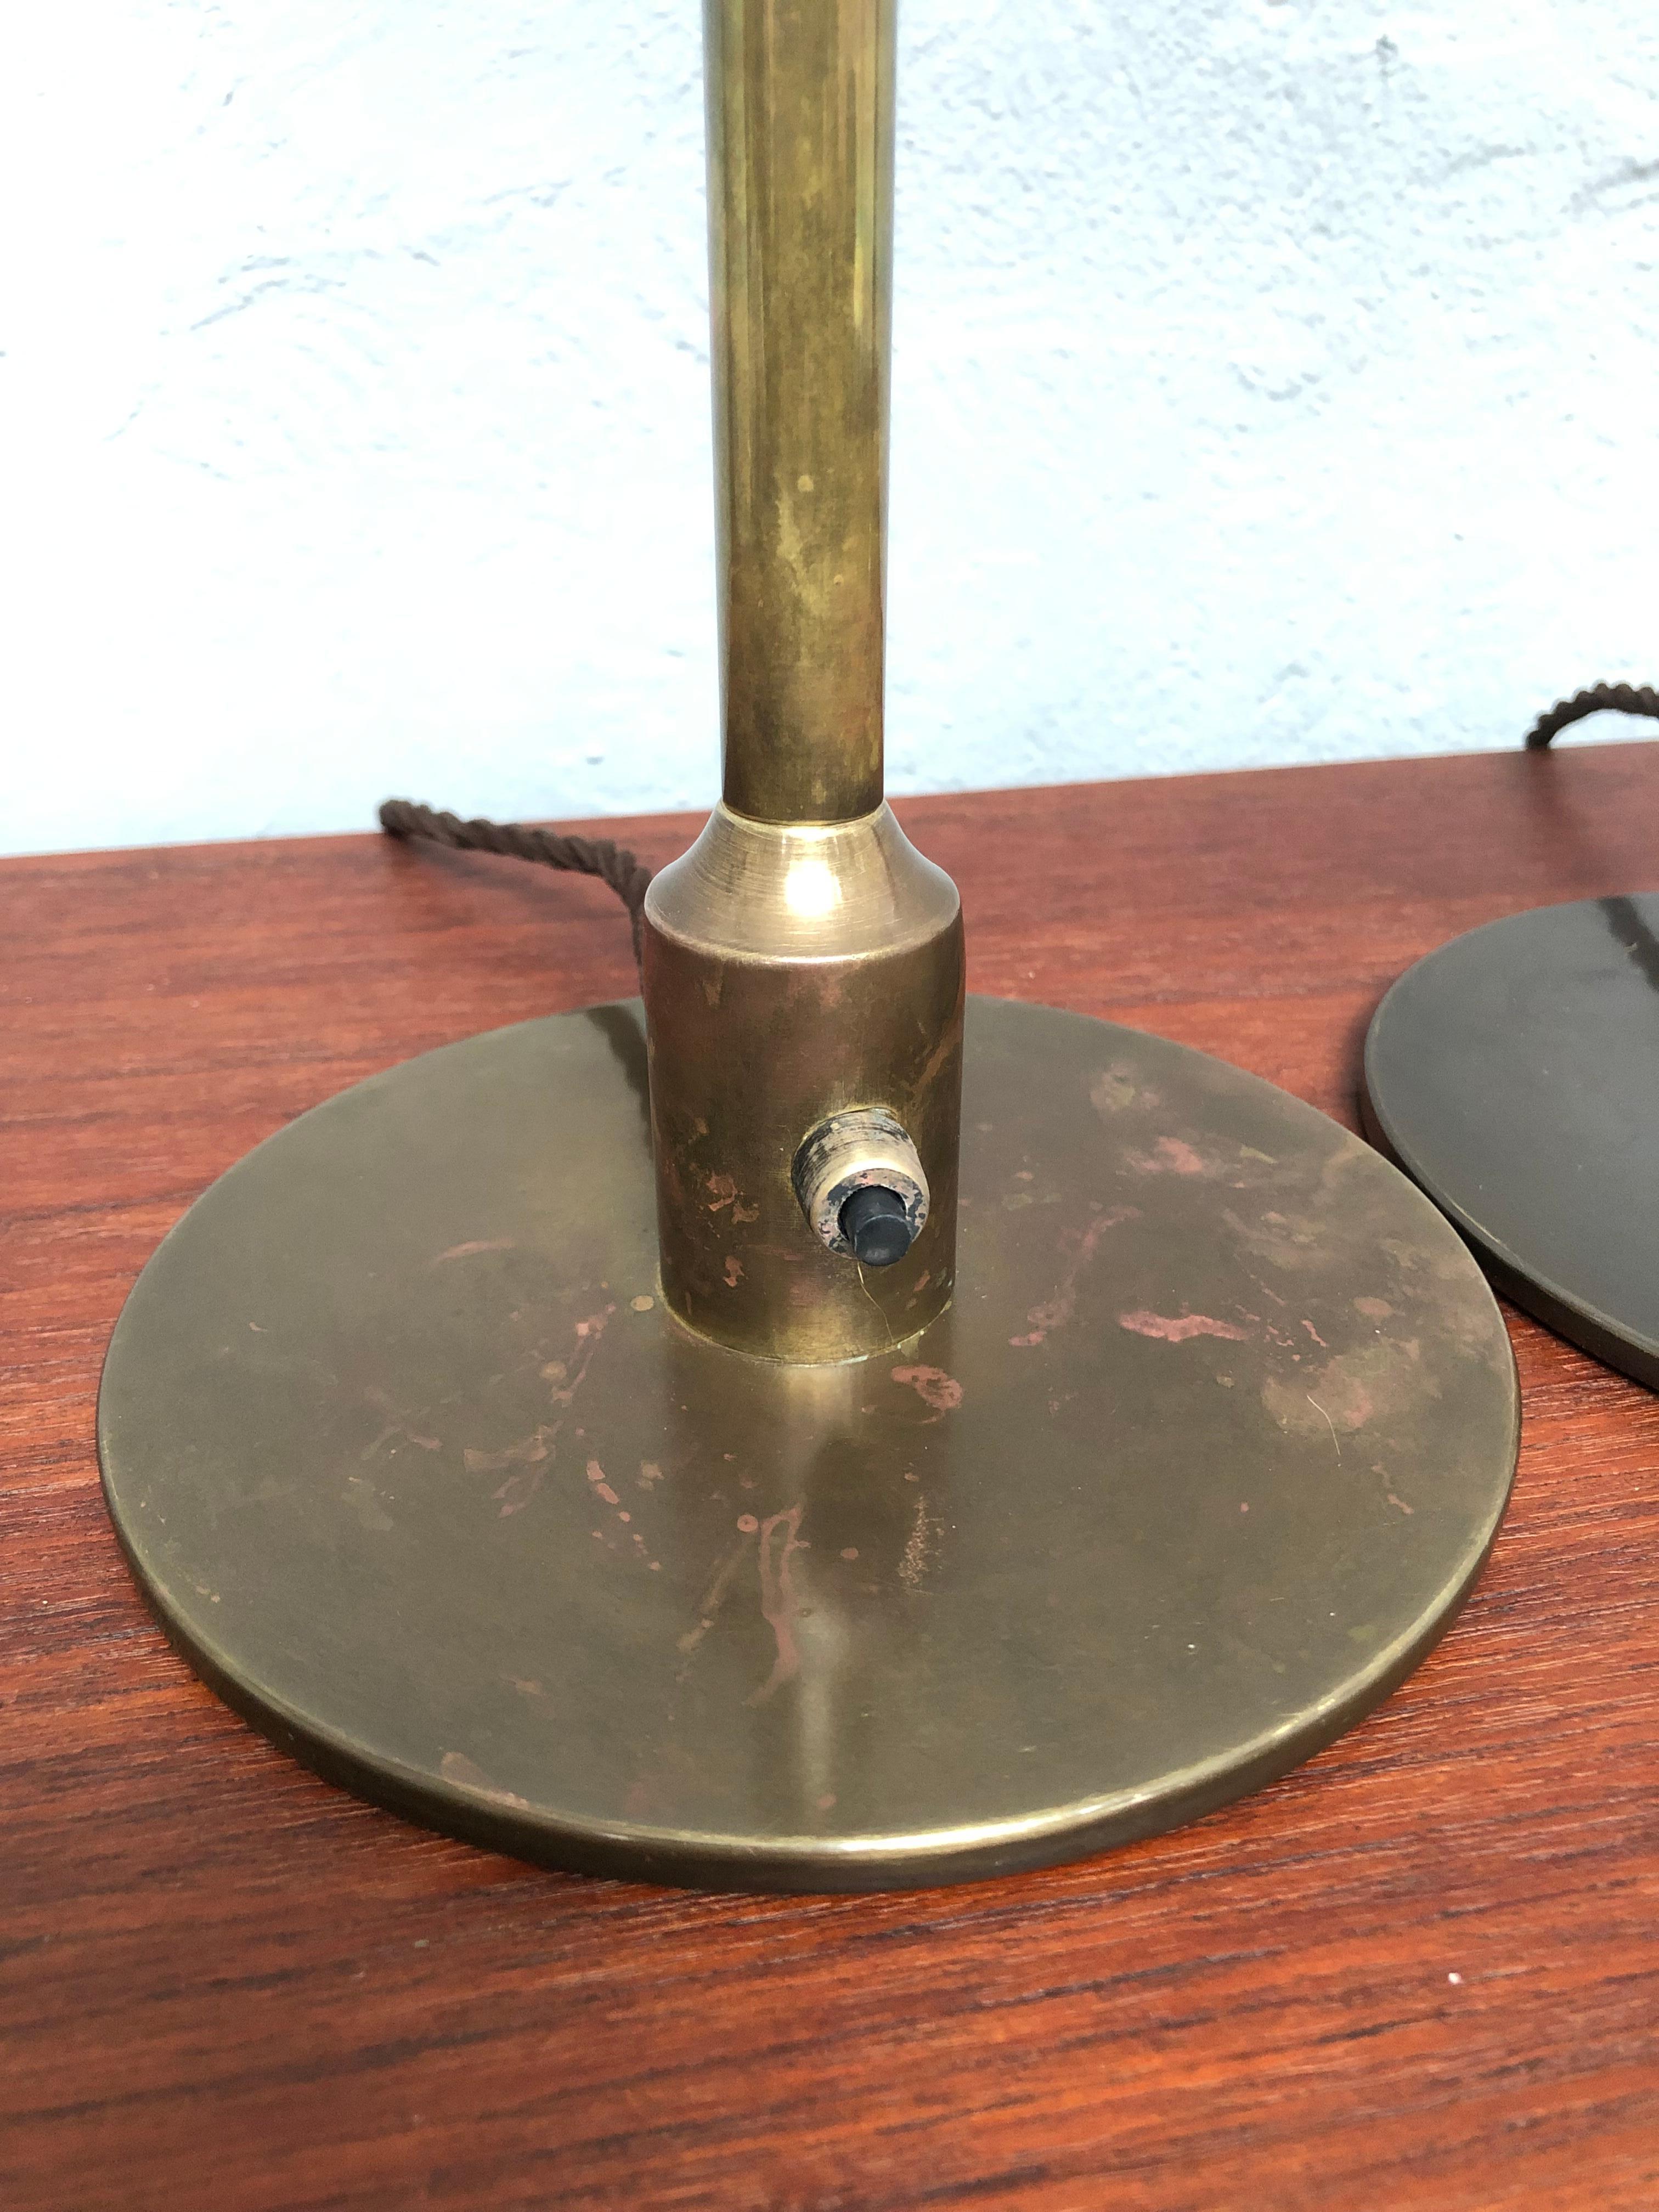 Une paire de lampes de table vintage en laiton de la société d'éclairage danoise Fog & Mørup des années 1940 dans le style de Poul Henningsen. 
Ces lampes ont été démontées et recâblées avec un câble en tissu brun torsadé, mises à la terre et